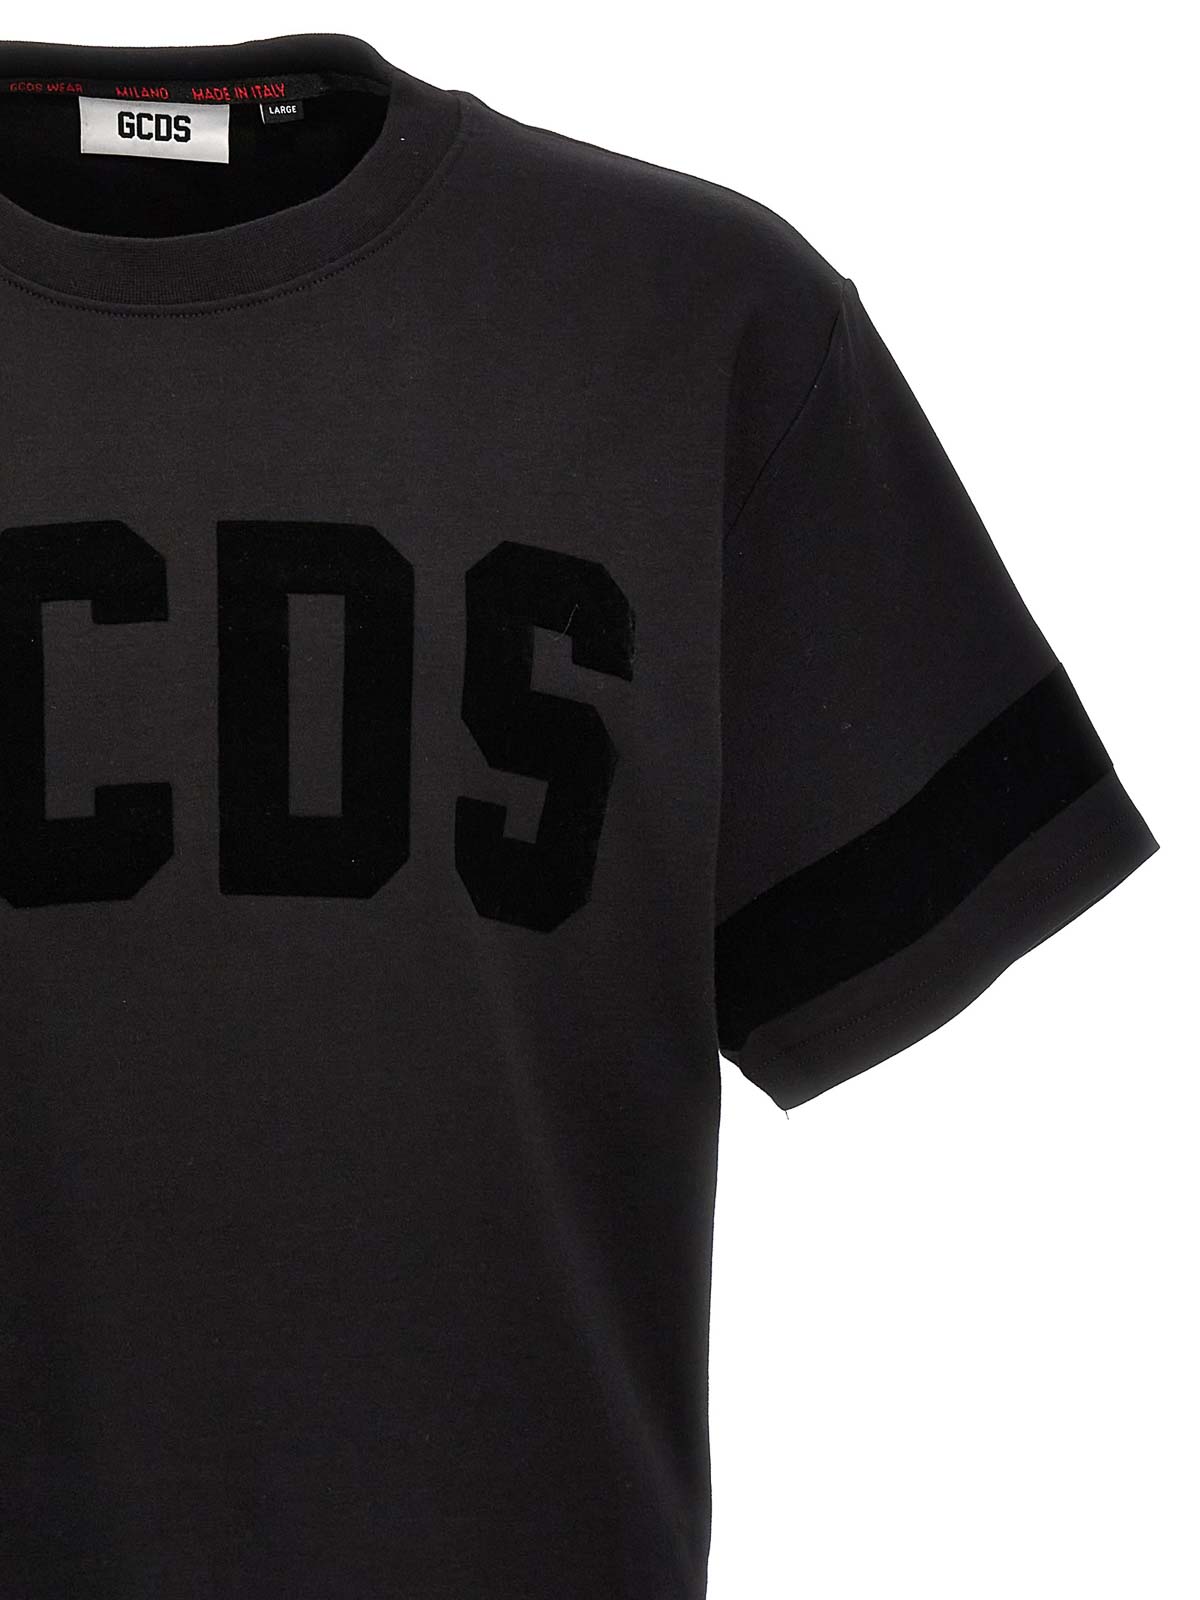 Gcds Men's Get High Print Oversized T-Shirt